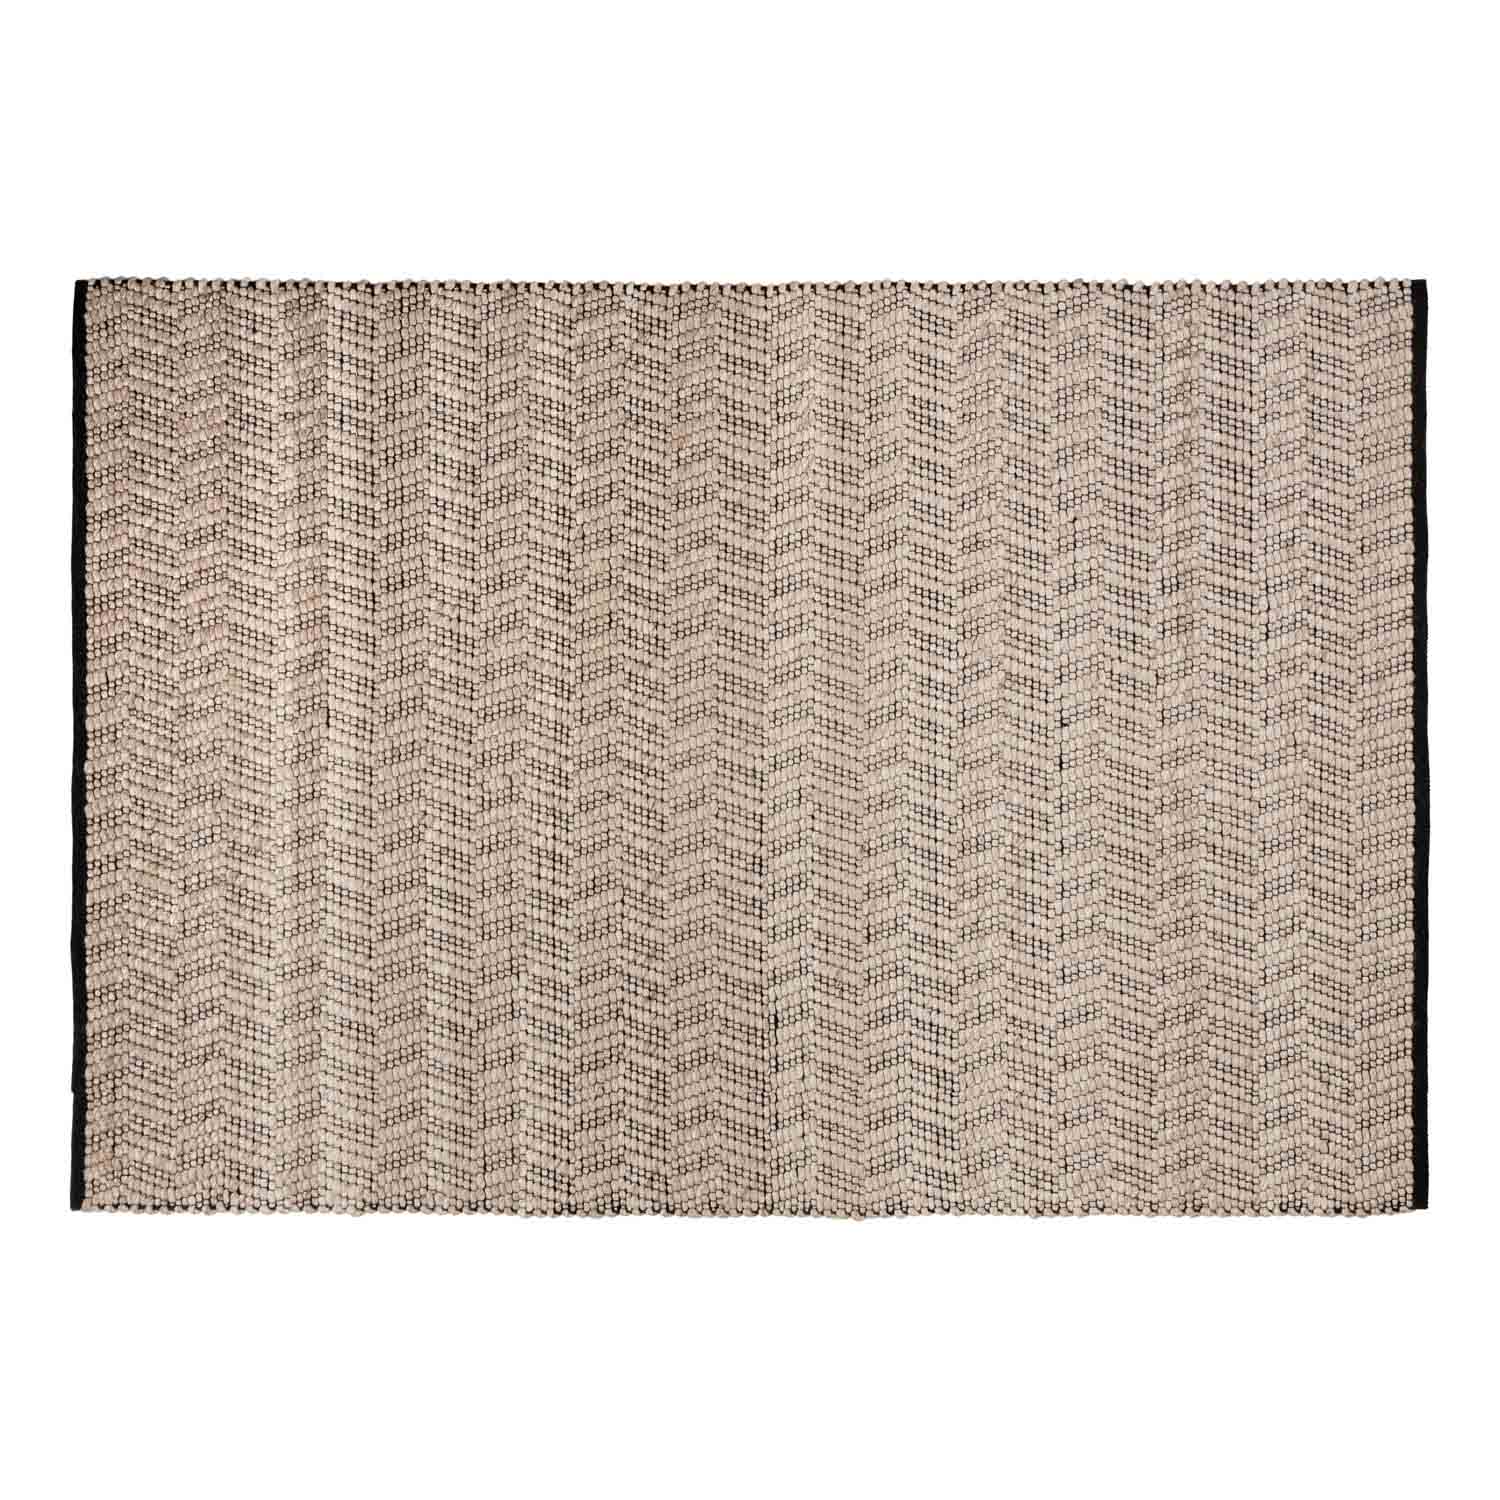 LAFORMA Neida gulvtæppe, rektangulært - gråt stof og uld (160x230)